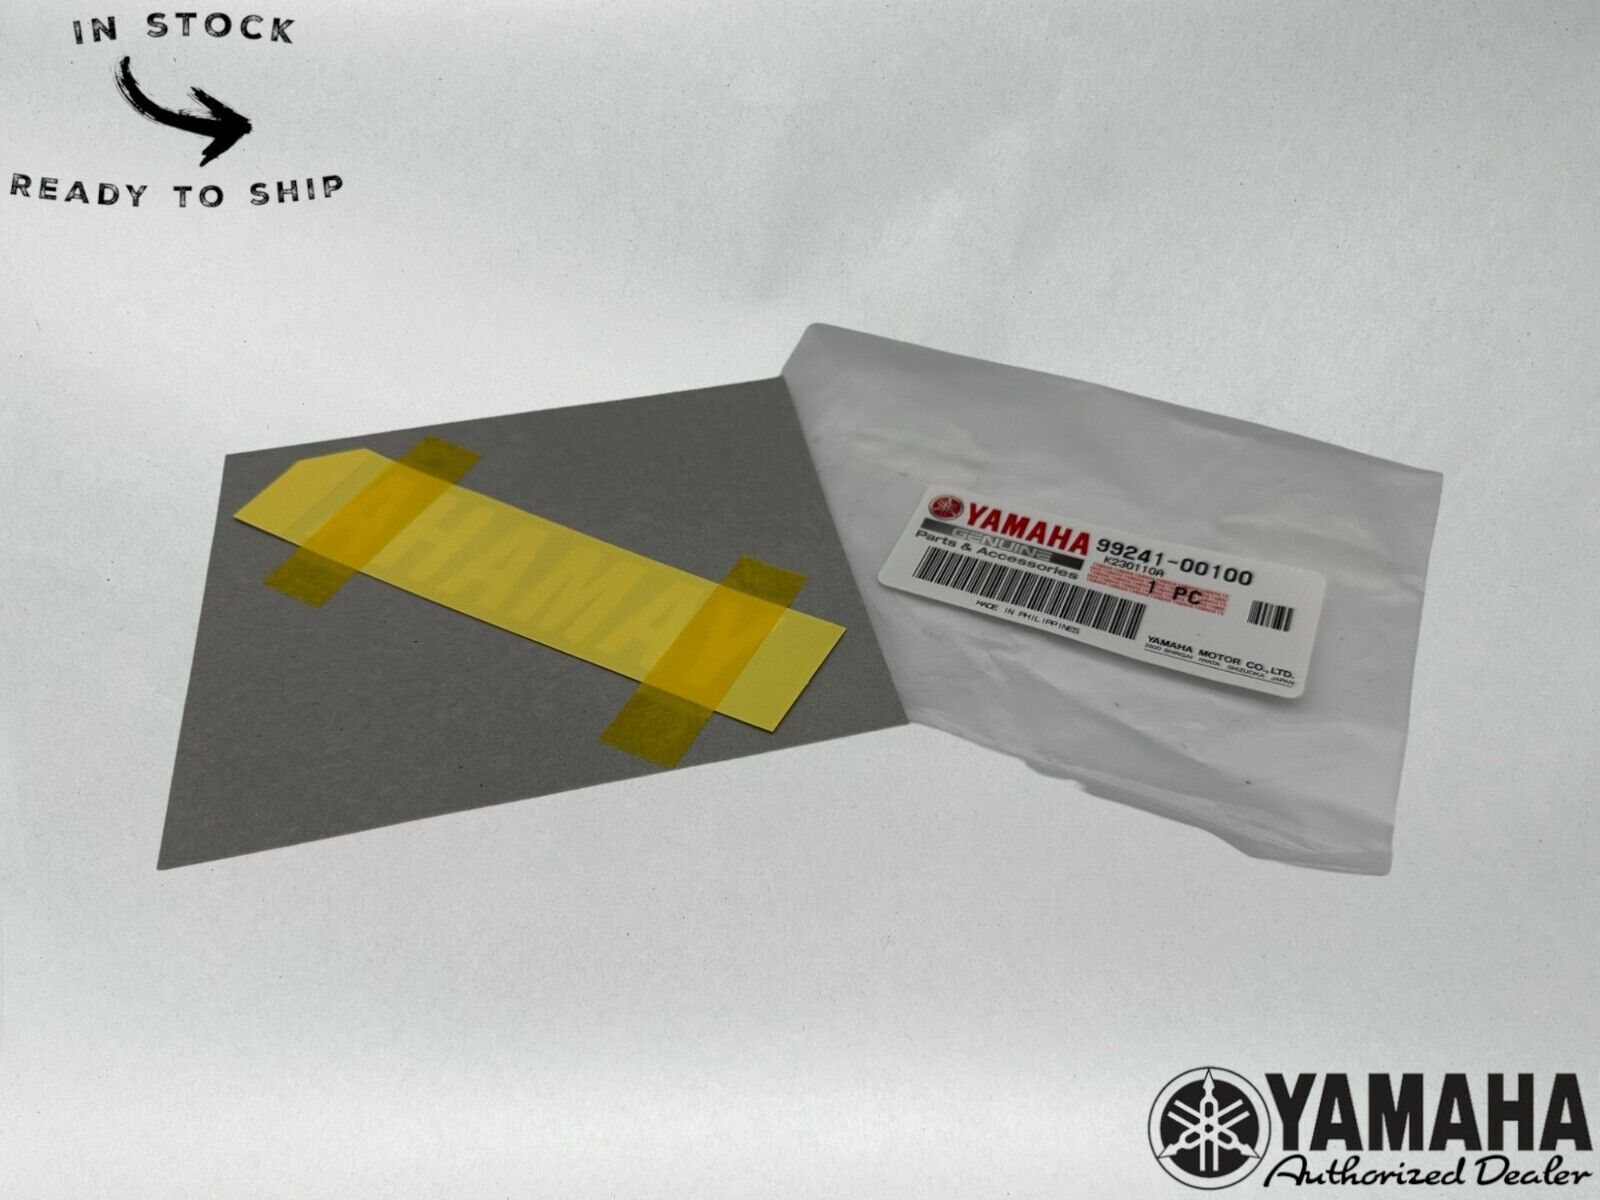 Yamaha Genuine OEM Yamaha Logo Emblem Vinyl Decal 99241-0010-00